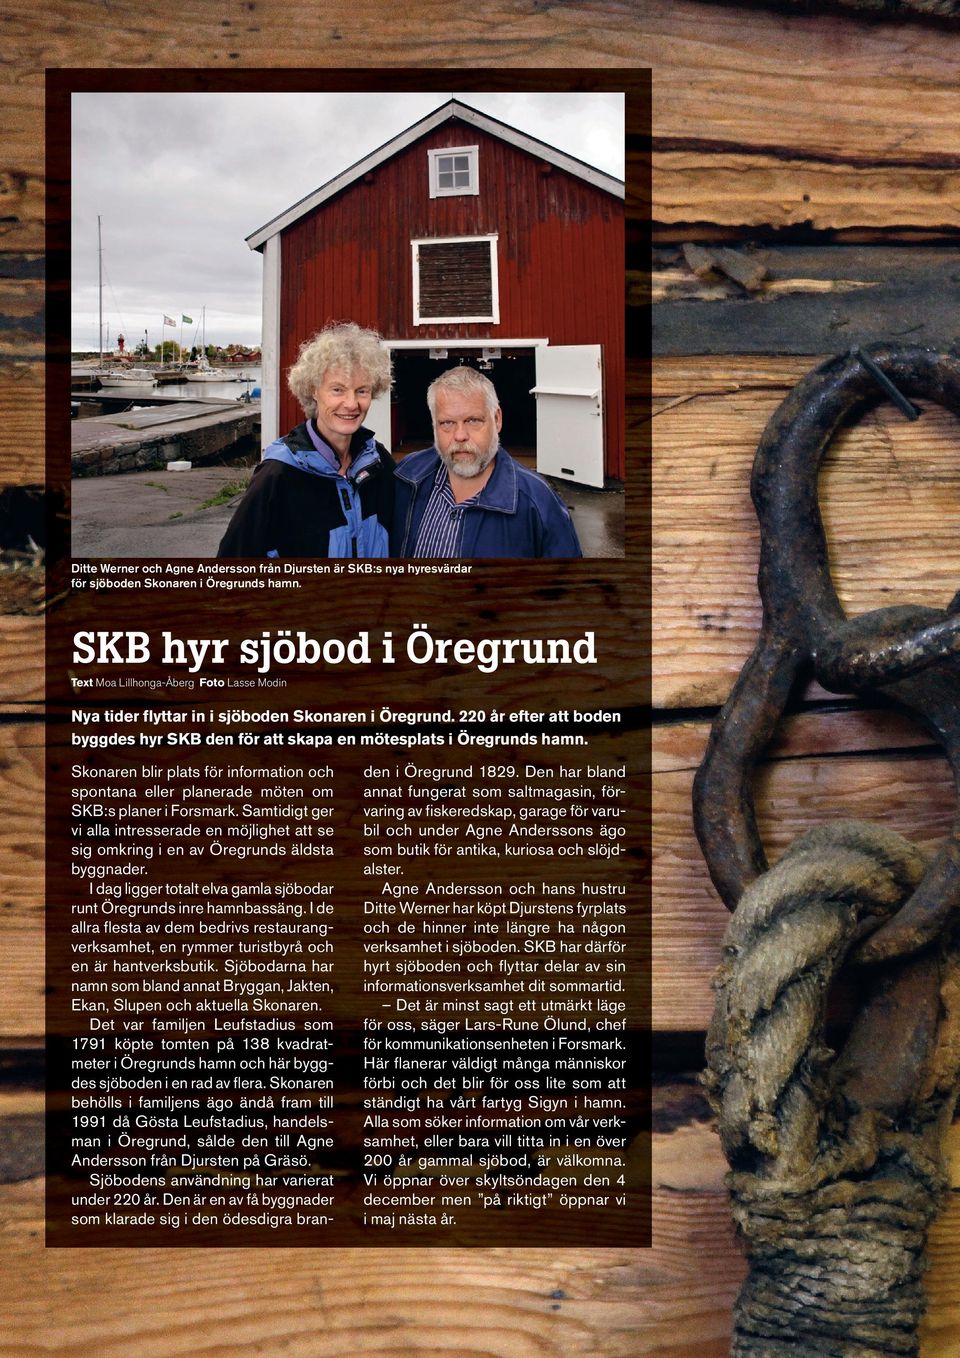 220 år efter att boden byggdes hyr SKB den för att skapa en mötesplats i Öregrunds hamn. Skonaren blir plats för information och spontana eller planerade möten om SKB:s planer i Forsmark.